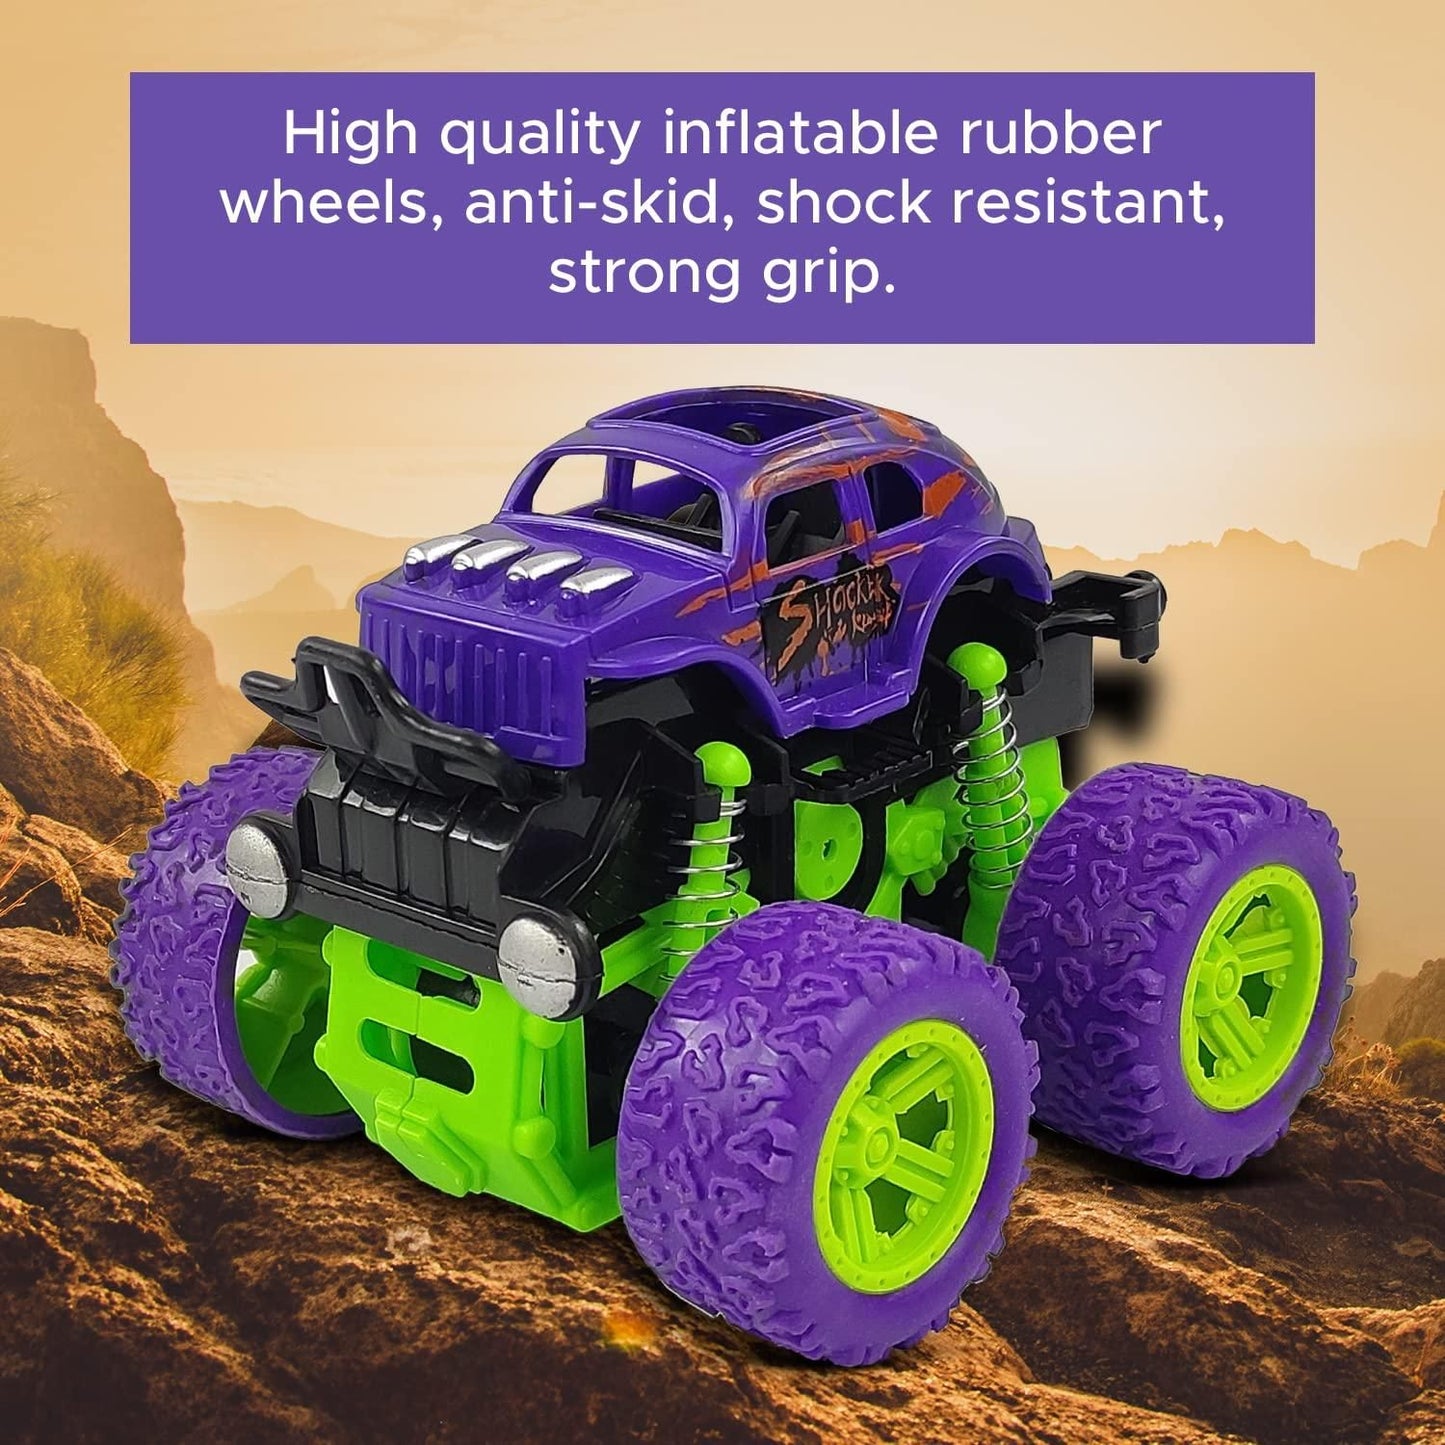 360 Degree Mini Monster Trucks Friction Powered Cars for Kids (Pack Of 2)